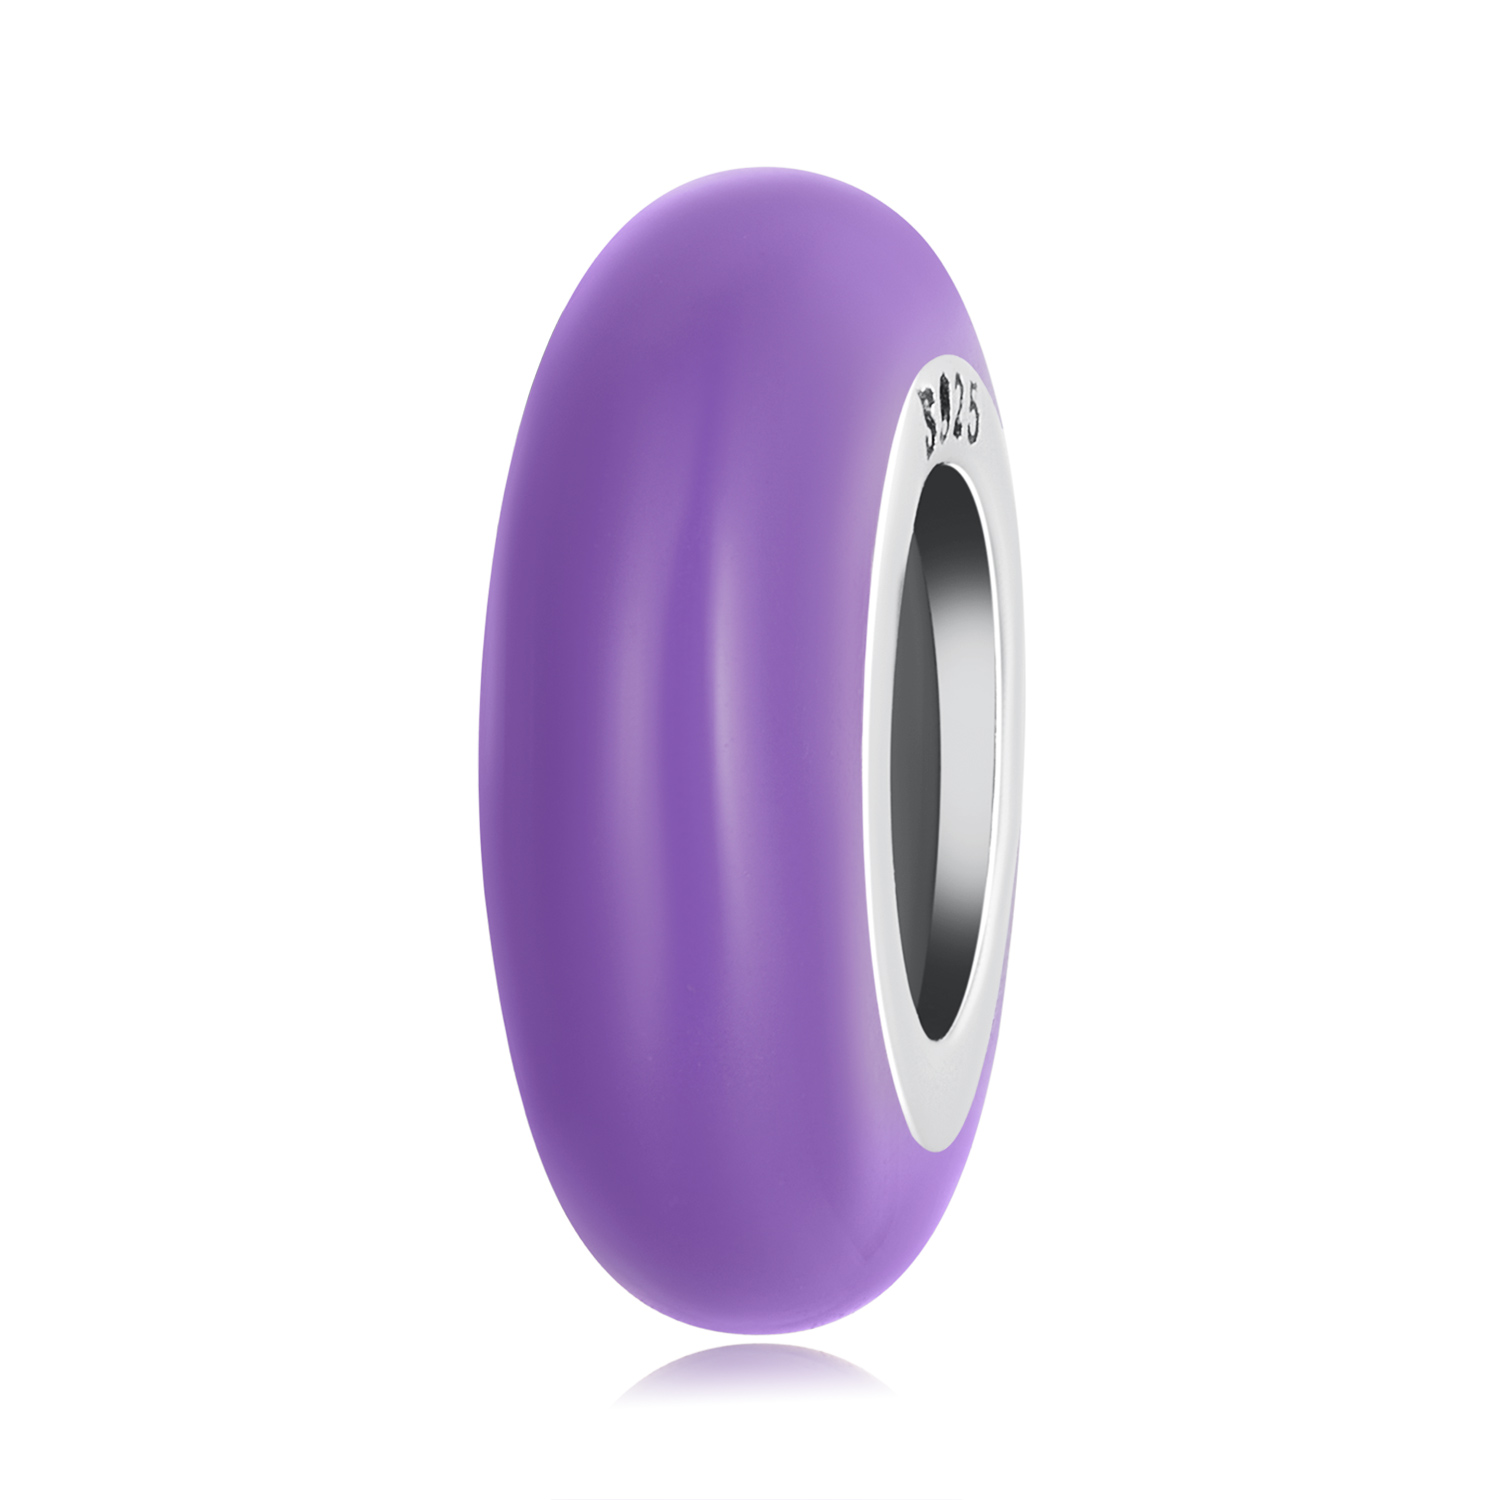 pandora style purple spacer charm scc1450 vt